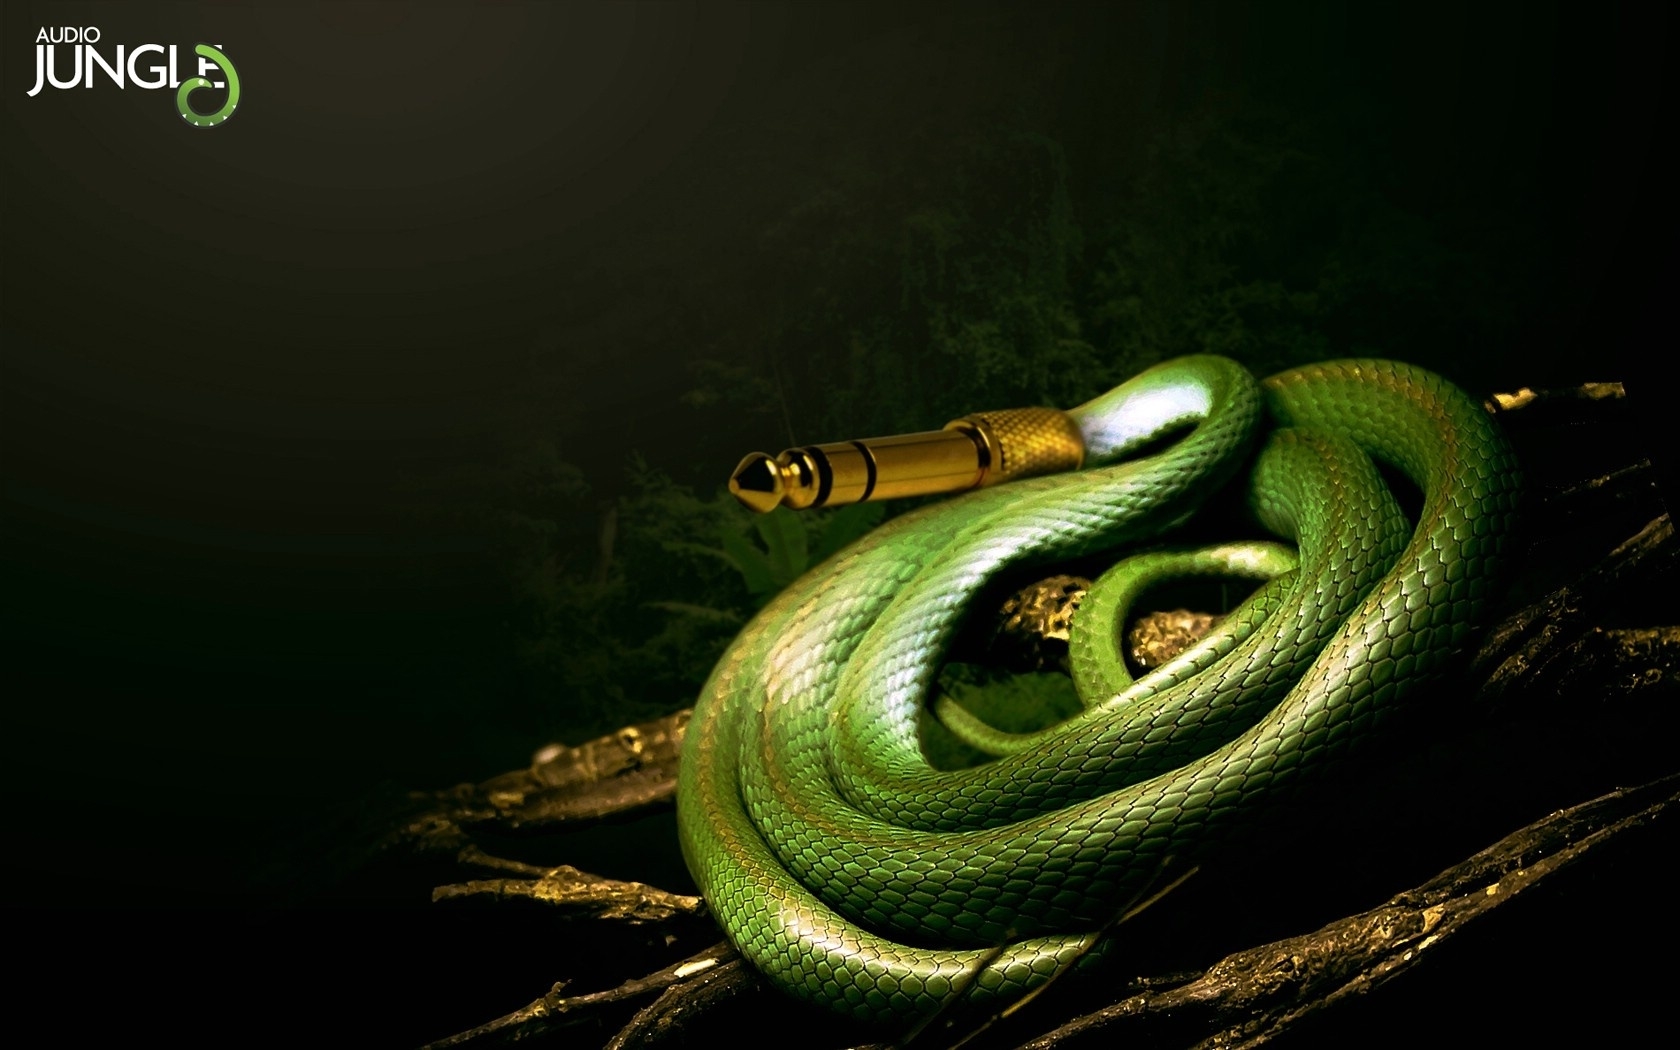 3d обои Аудио-провод в виде змеи (Audio jungle)  змеи # 41152